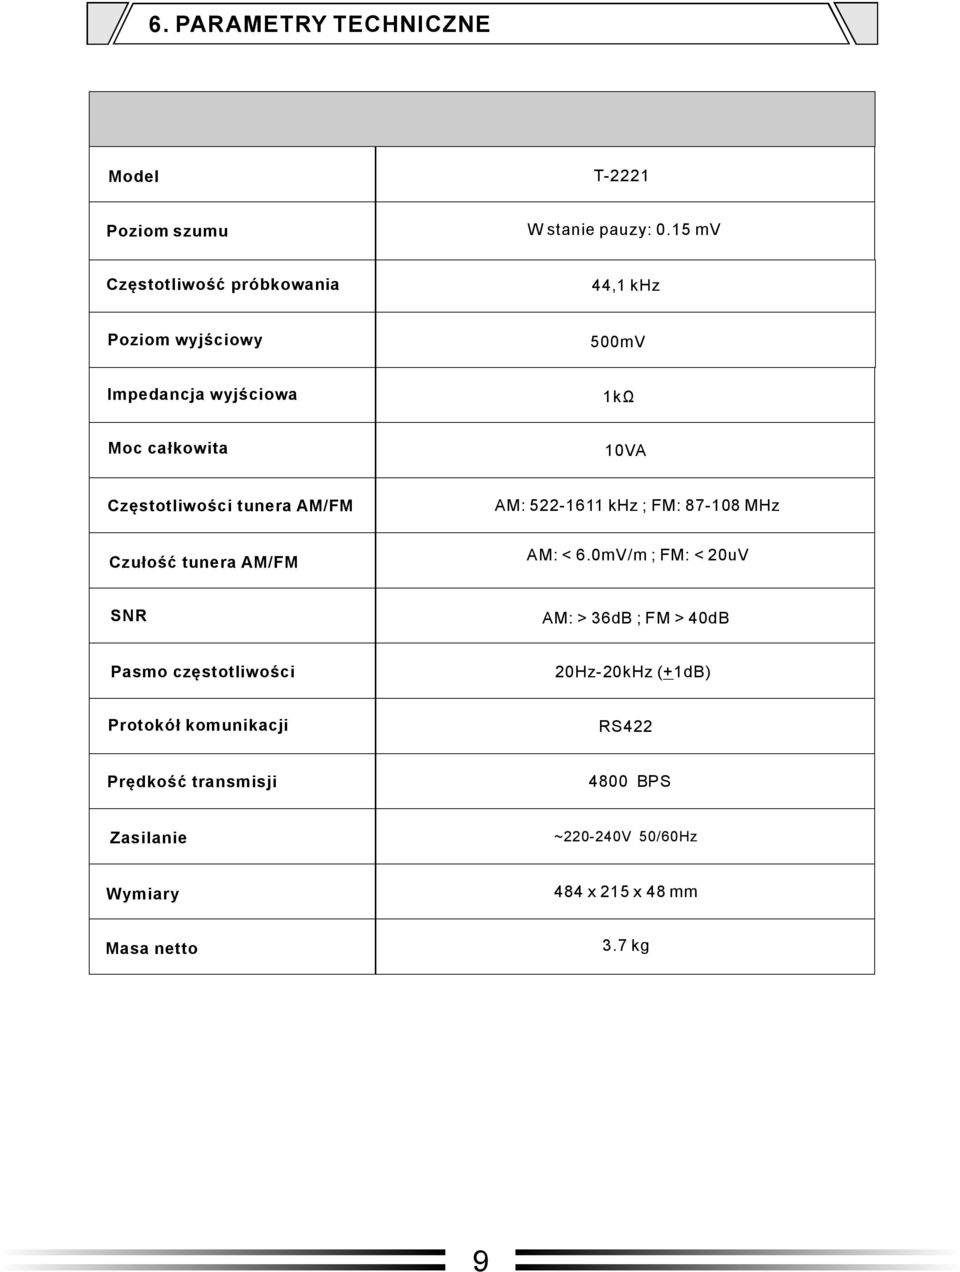 Częstotliwości tunera AM/FM AM: 522-1611 khz ; FM: 87-108 MHz Czułość tunera AM/FM AM: < 6.